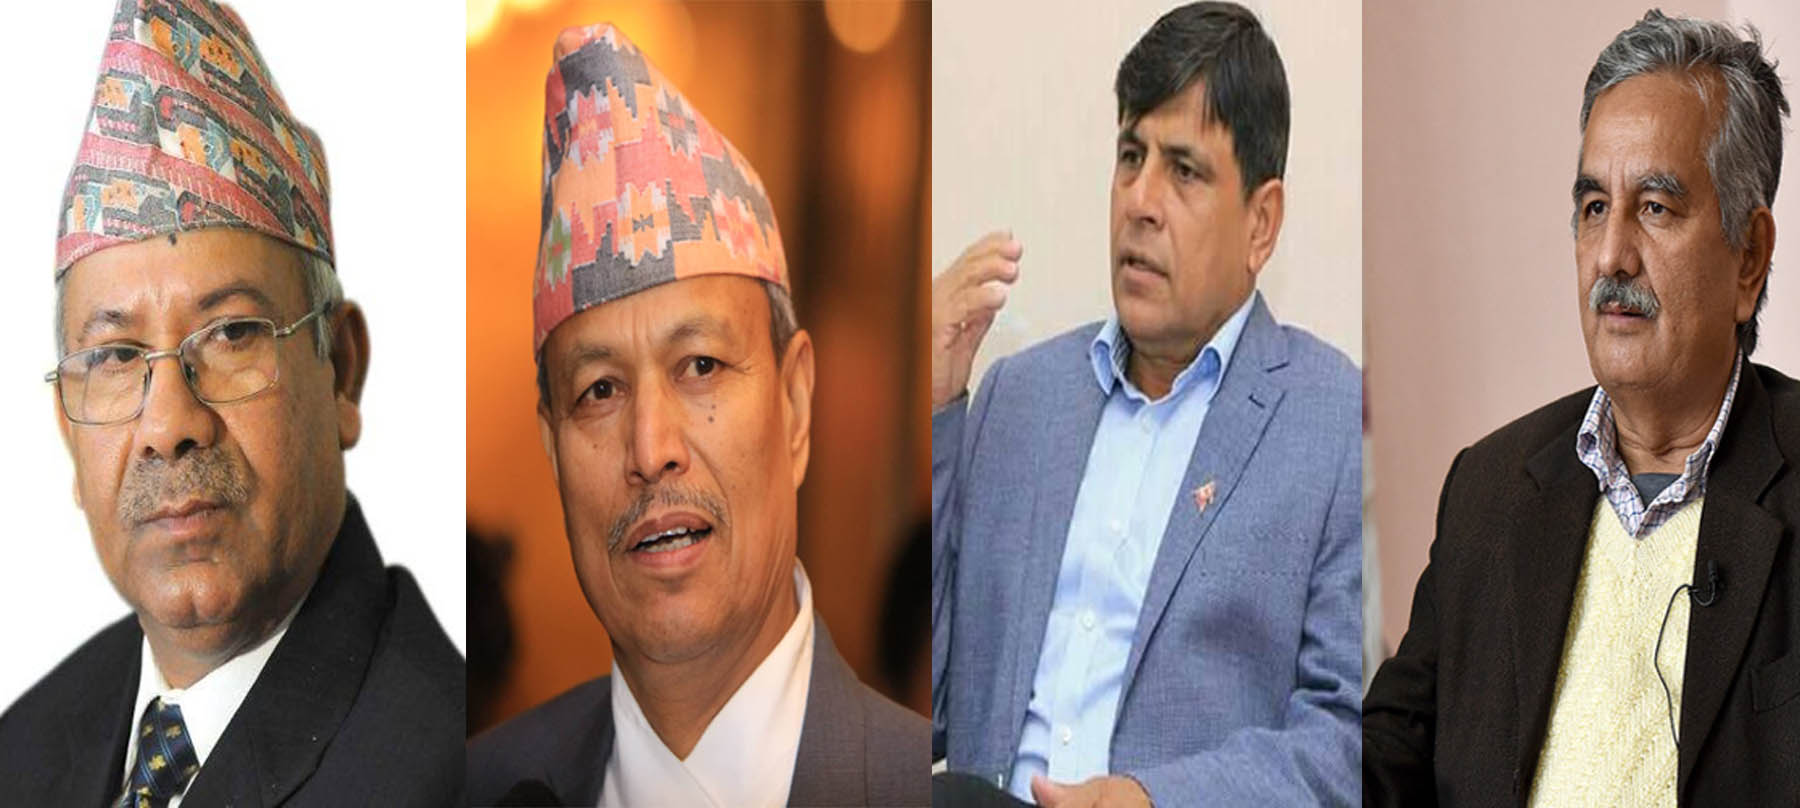 माधव नेपालसहित चार नेतालाई एमालेले पठायो स्पष्टिकरण पत्र, तीन दिनभित्र जवाफ दिन निर्देशन